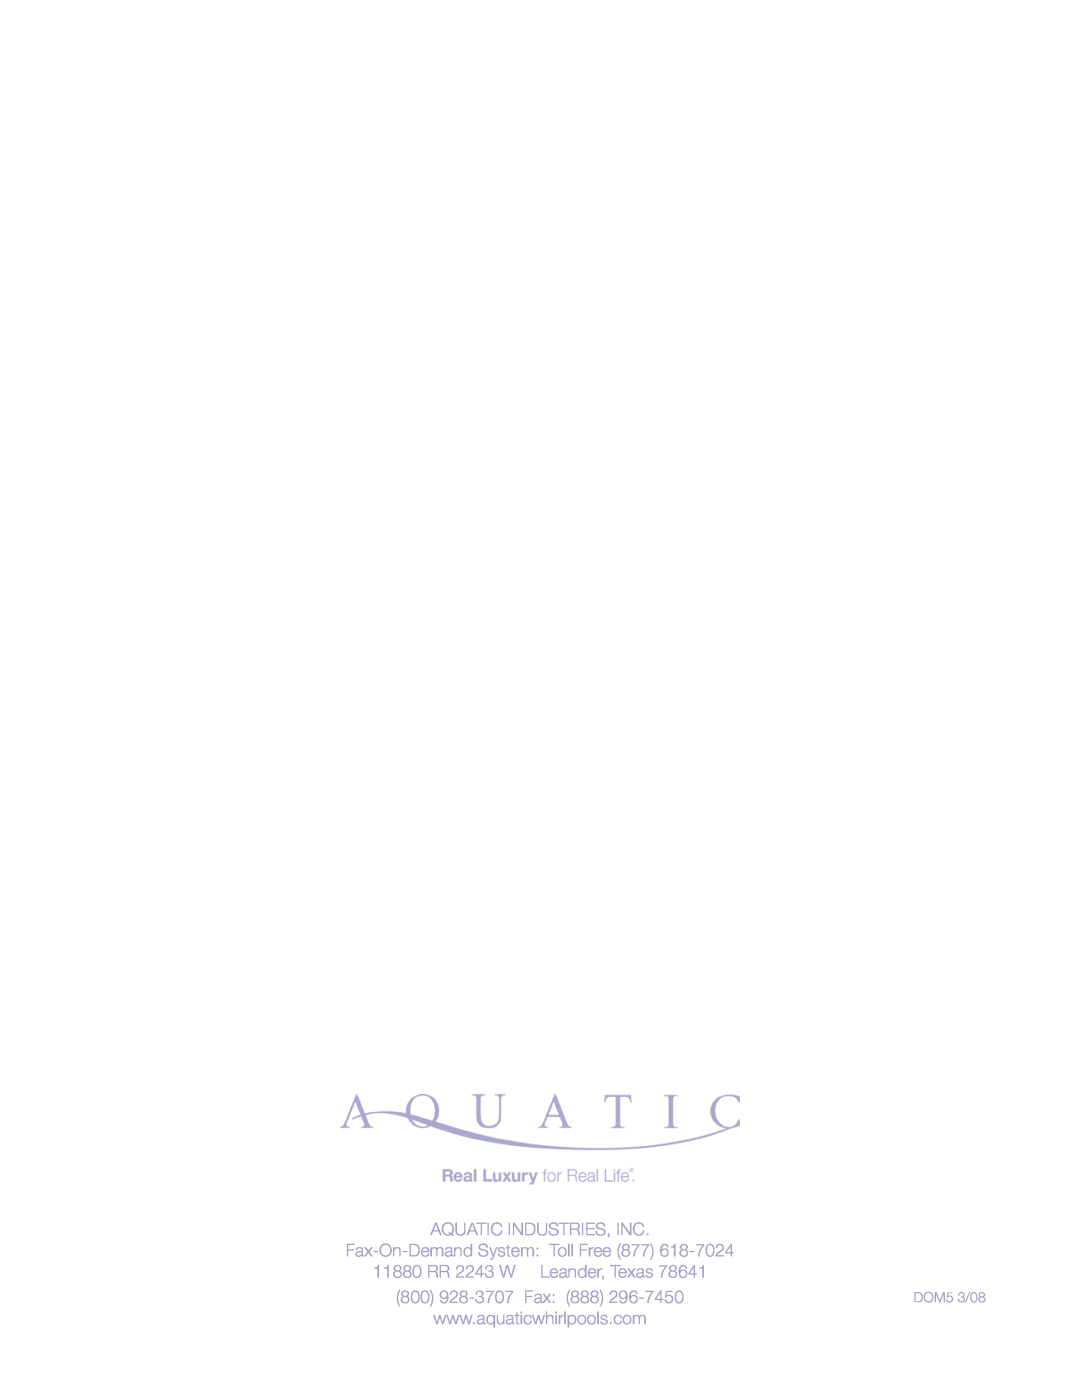 Aquatic Delicair Laundry Basin Aquatic Industries, Inc, Fax-On-DemandSystem Toll Free, 11880 RR 2243 W Leander, Texas 